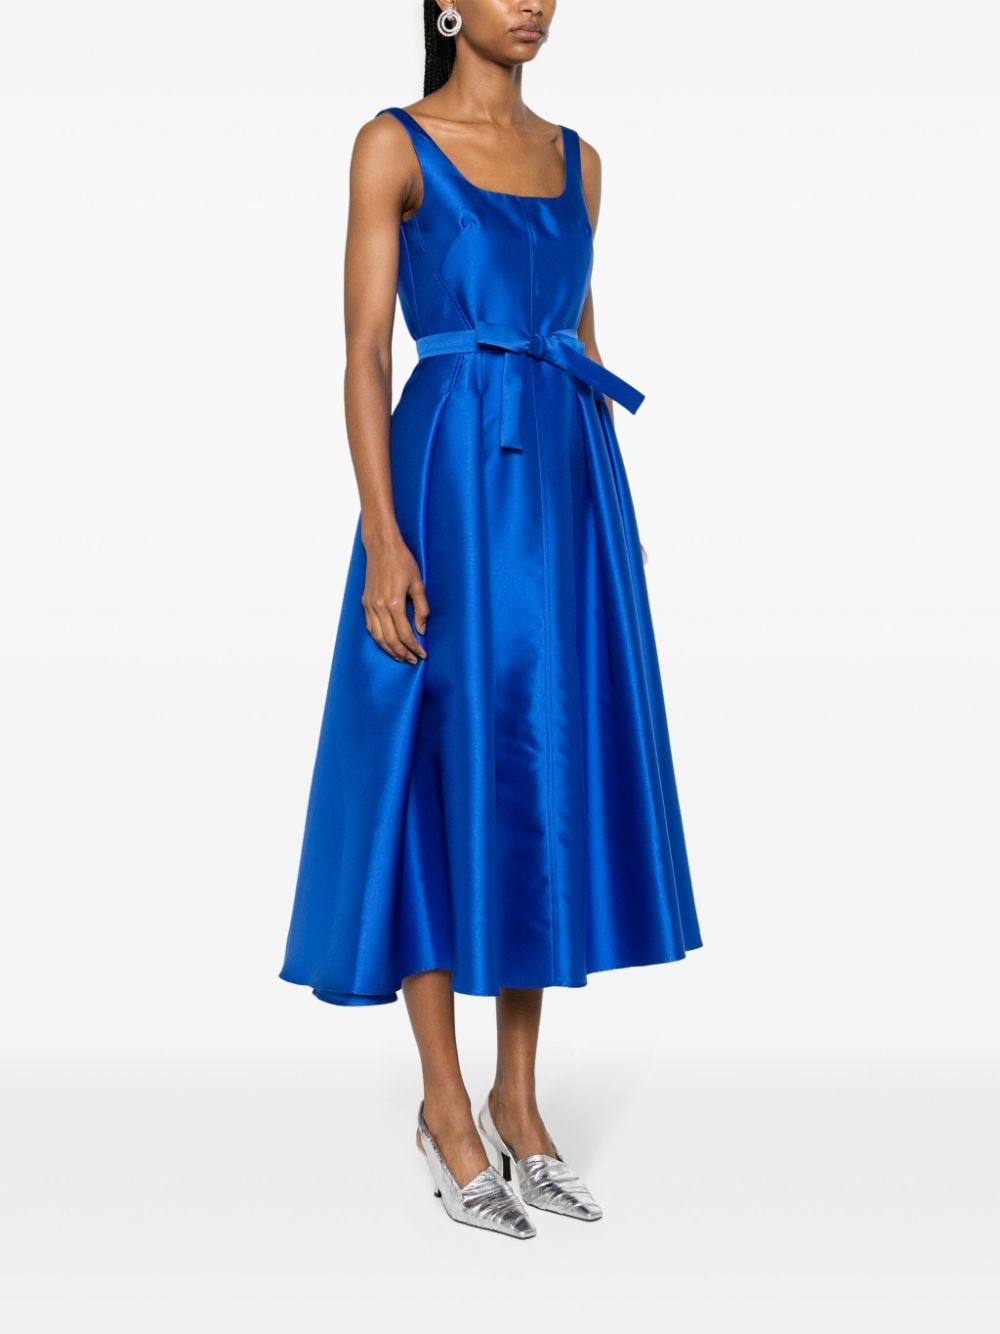 Shop Blanca Vita Arrojadoa Twill Dress In Blue